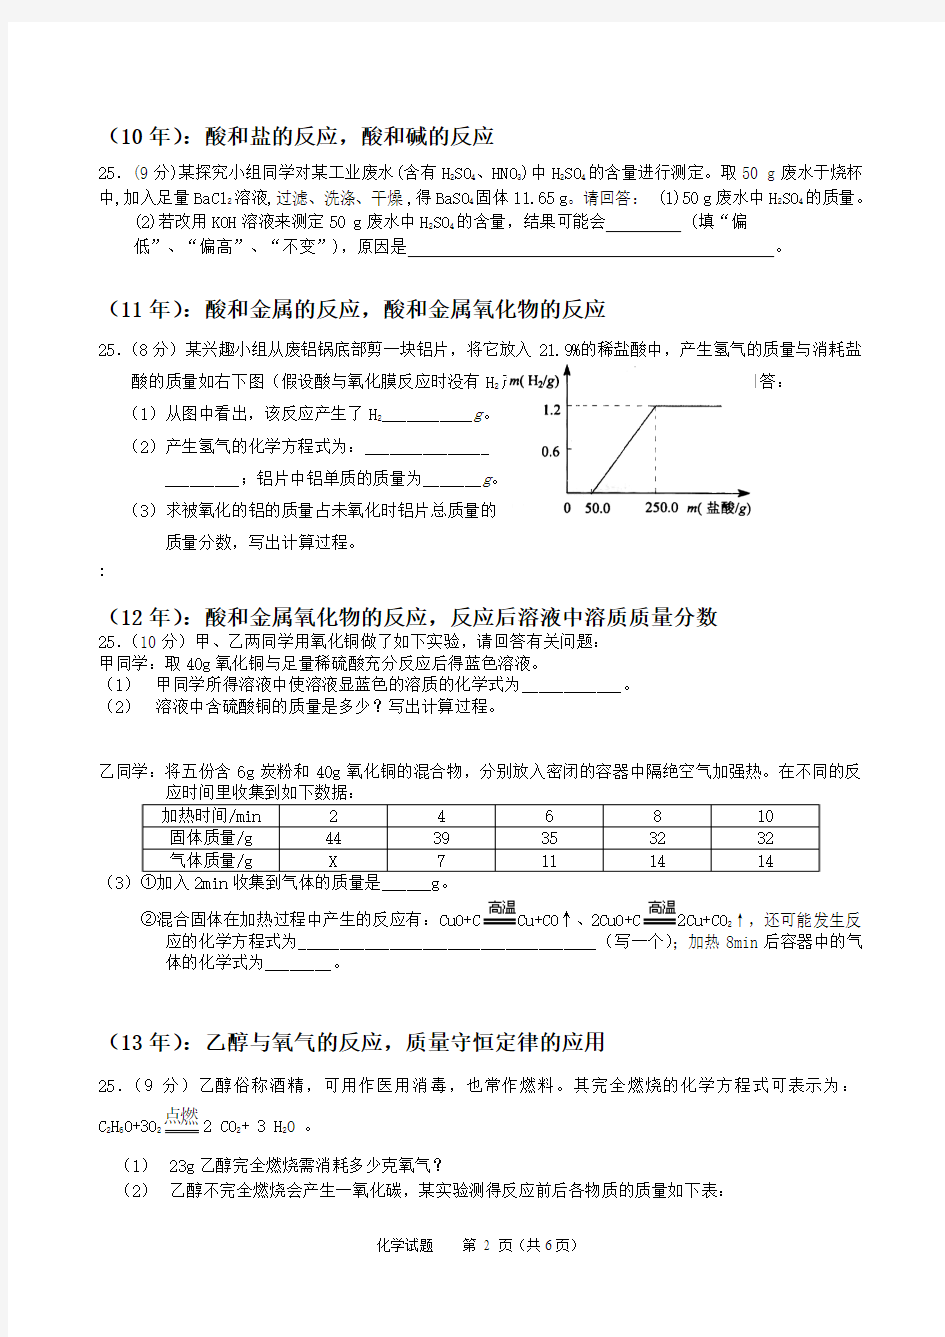 广东中考化学07-14年初中化学中考压轴计算真题改动